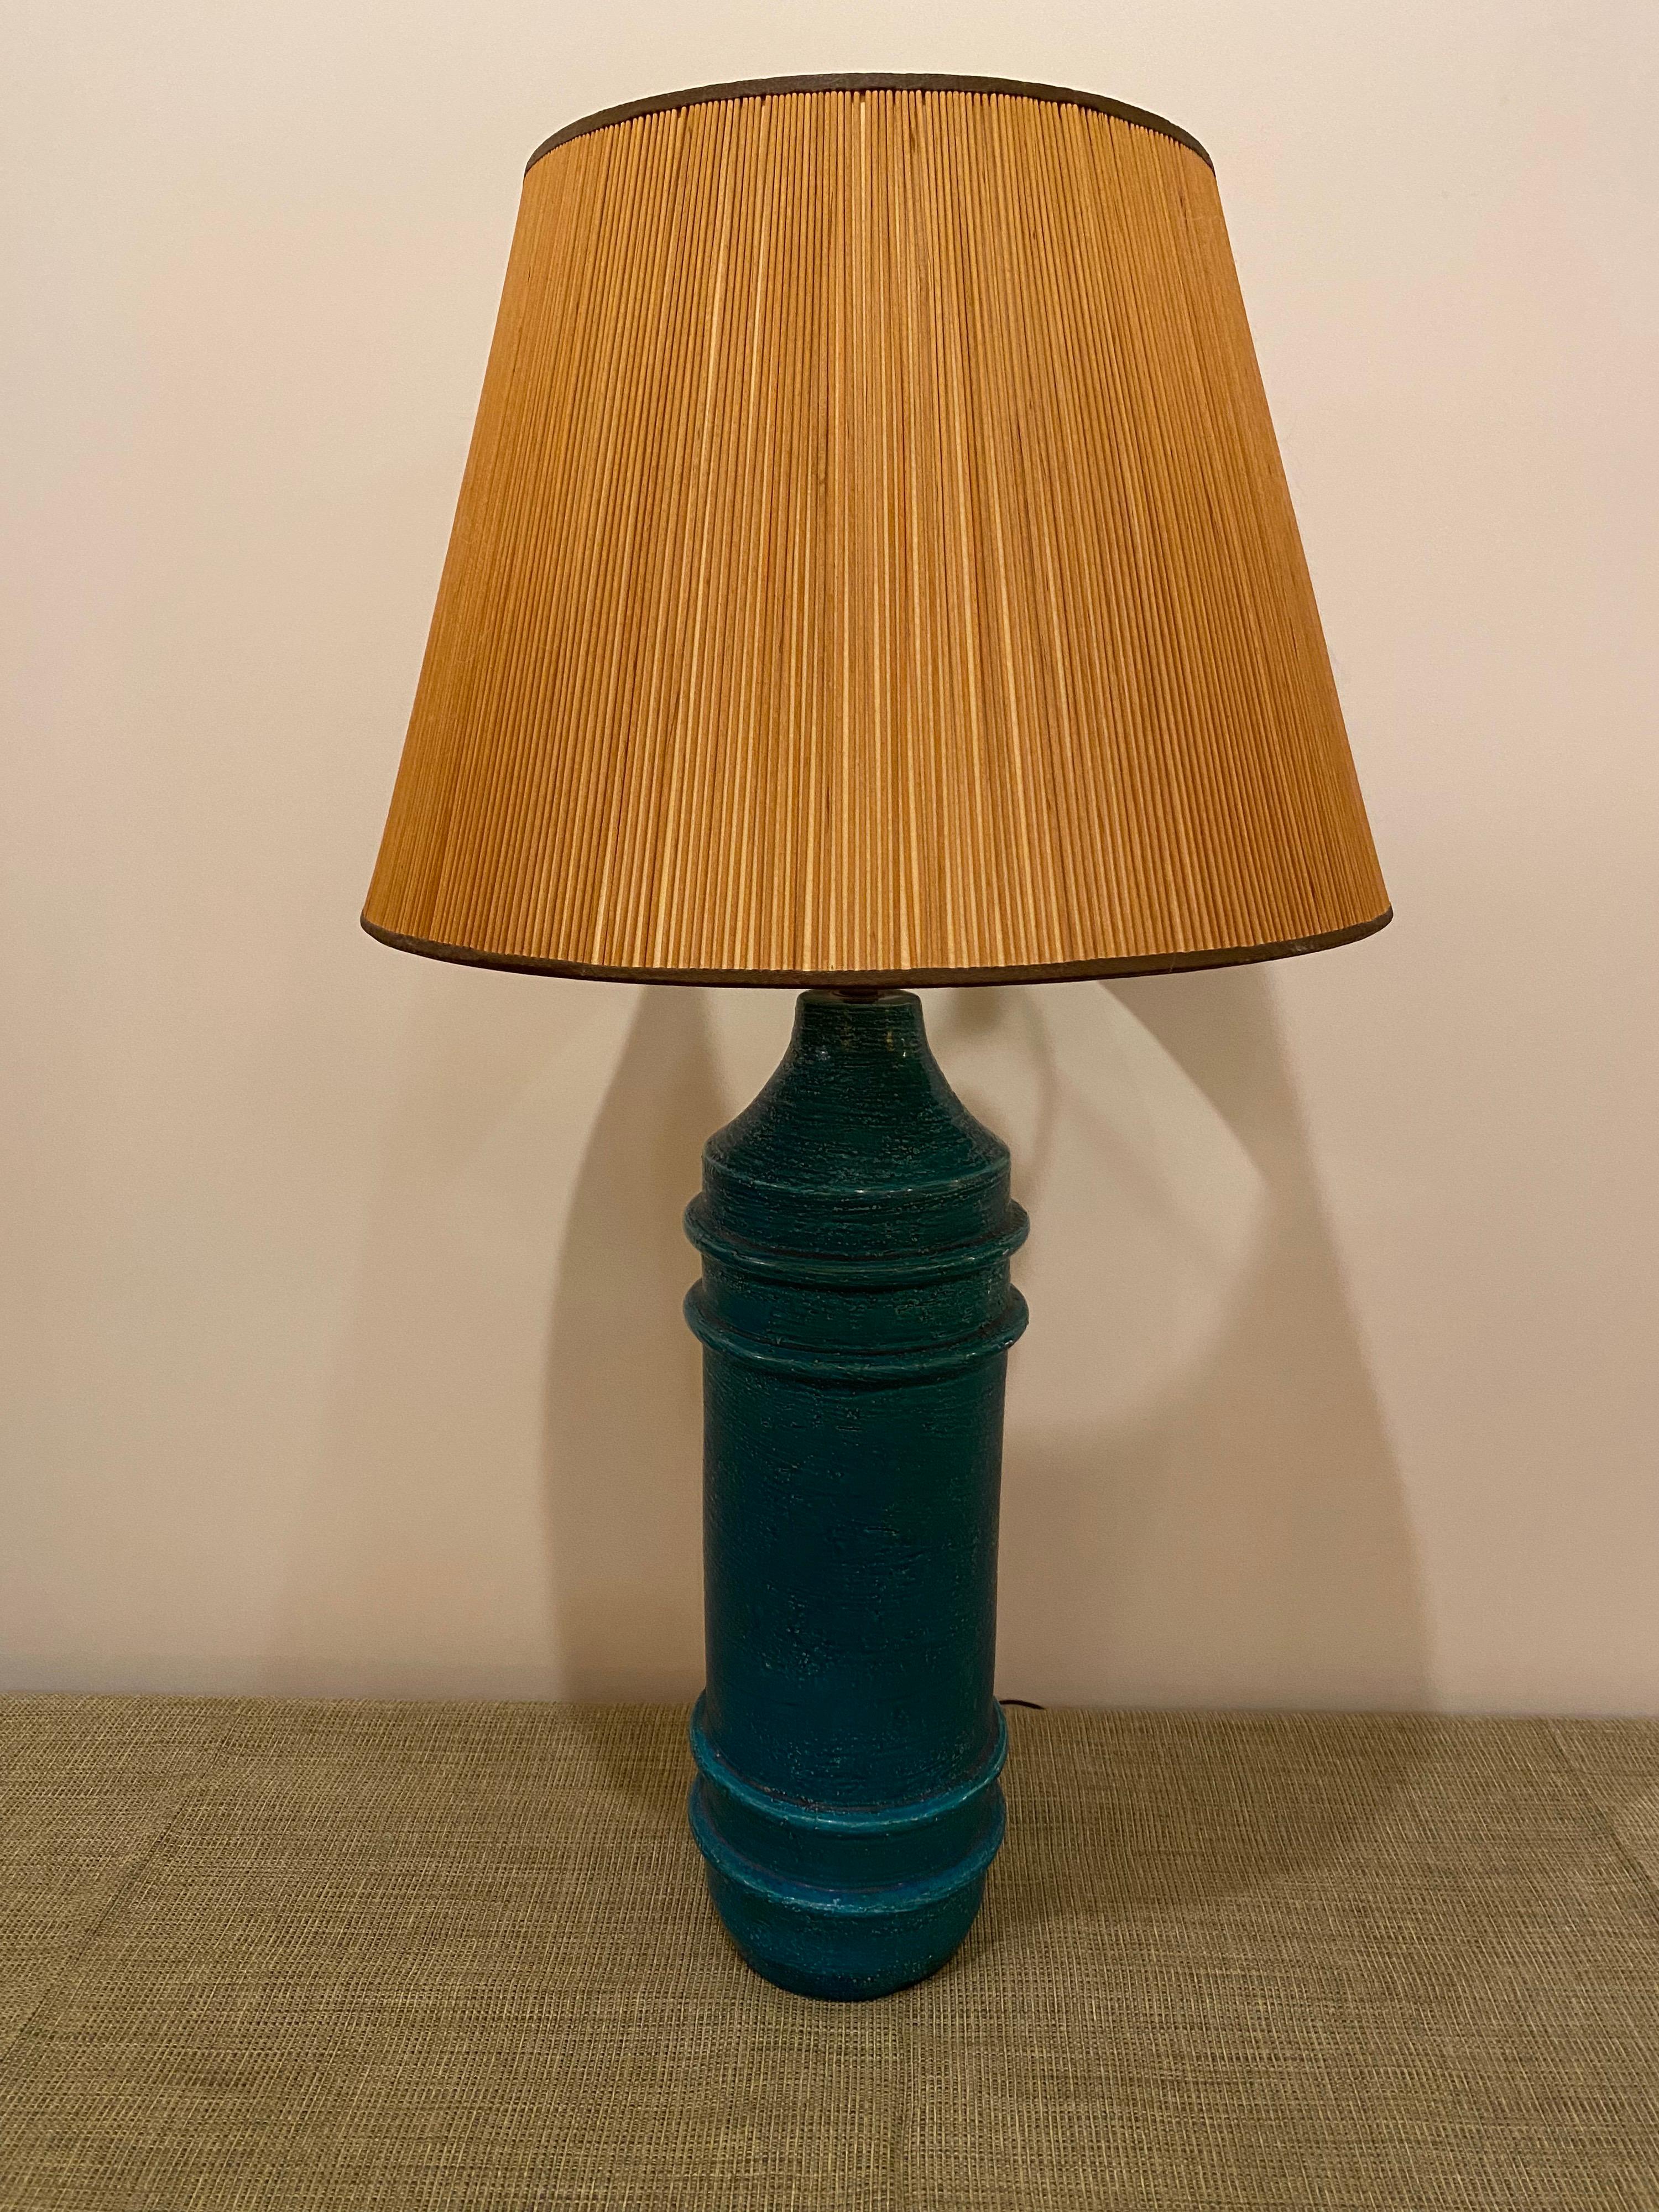 Ceramic Aldo Londi for Bitossi Table Lamp